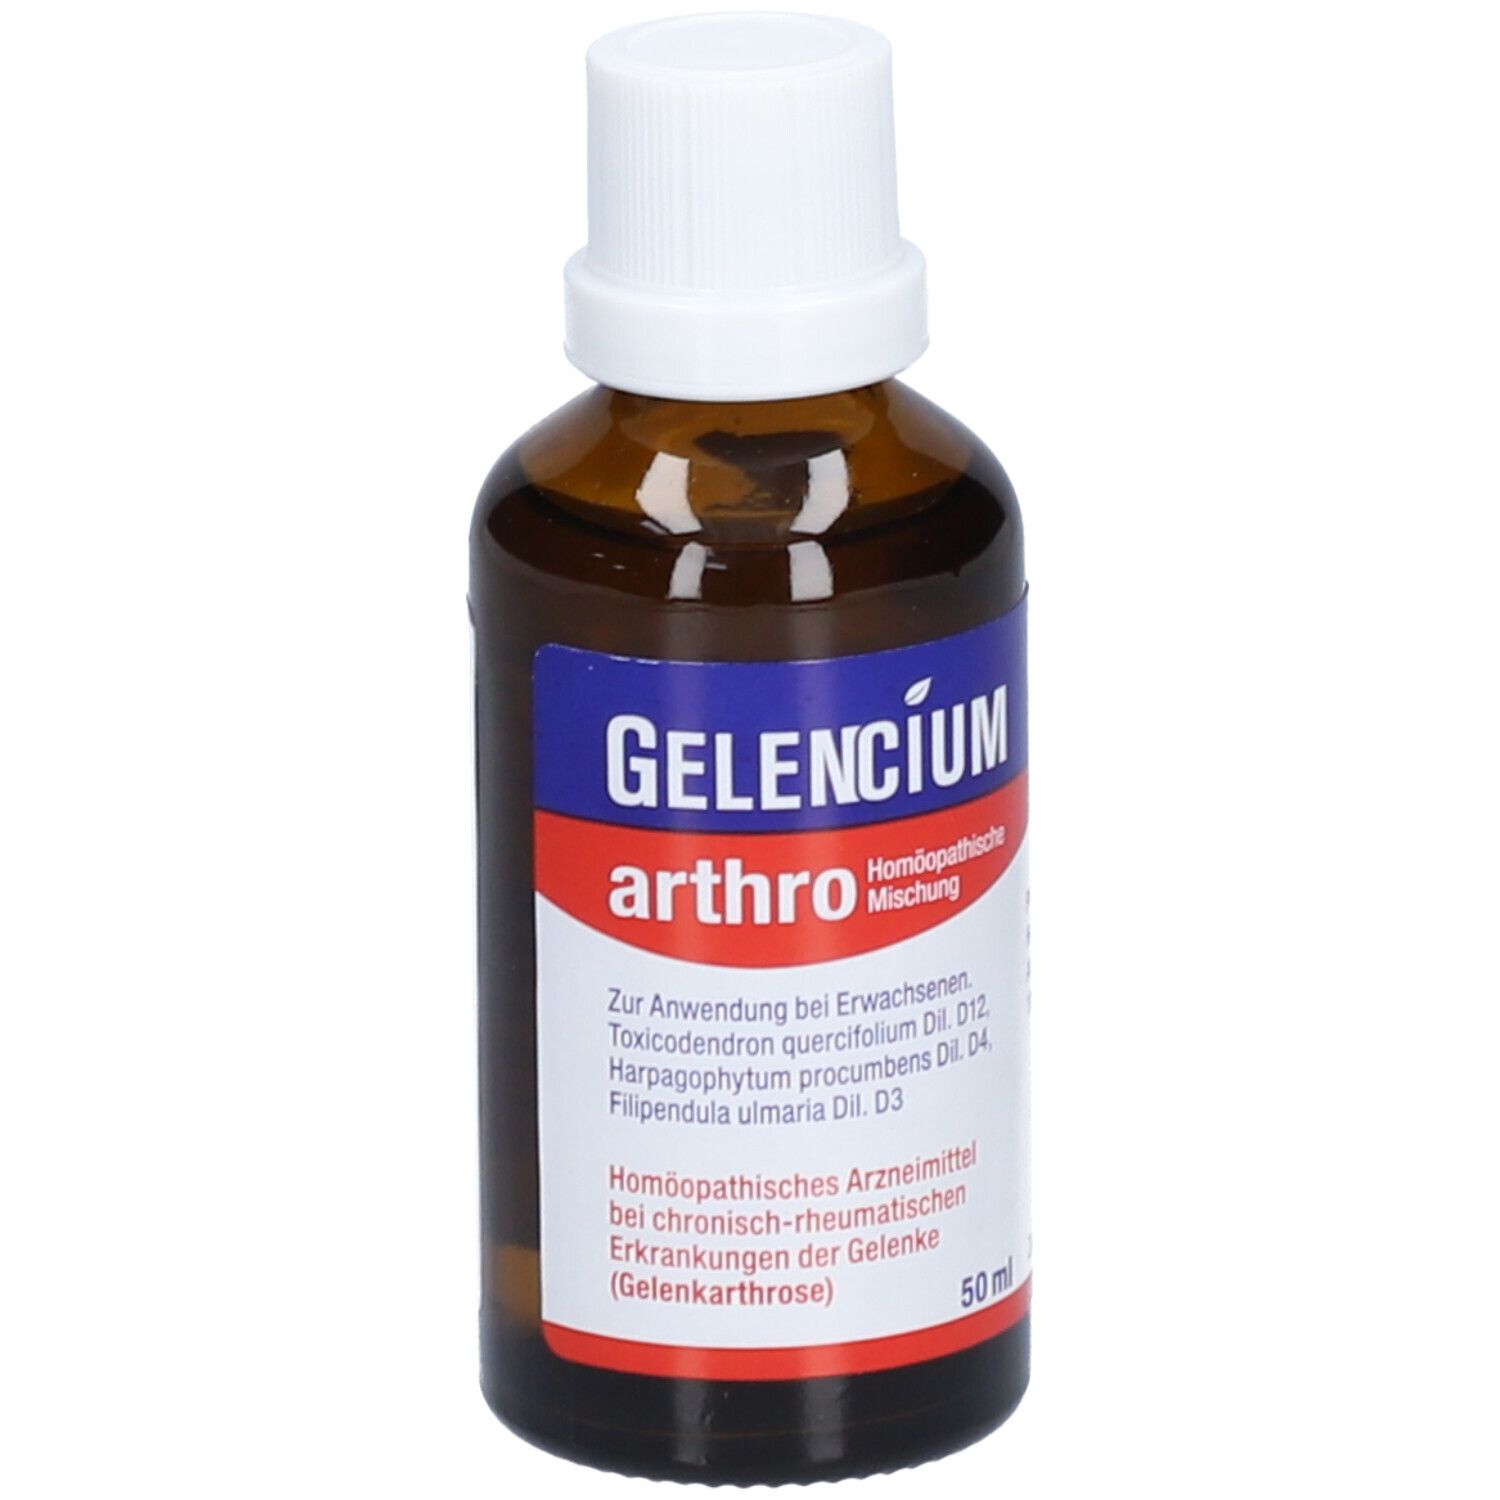 Gelencium® arthro